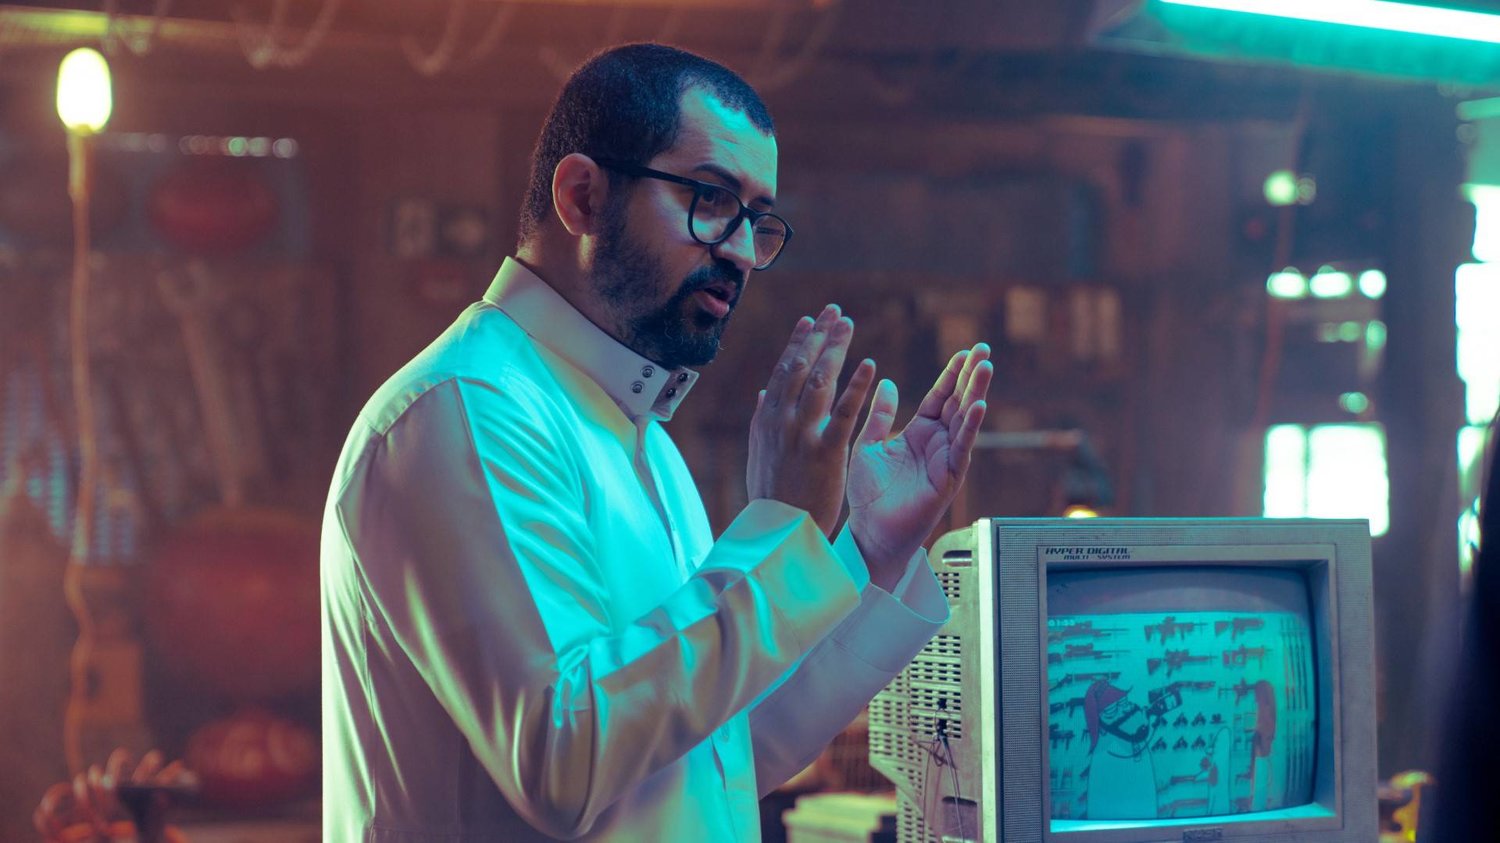 المخرج السعودي مالك نجر يتحدث عن فيلمه الجديد وجهًا لوجه